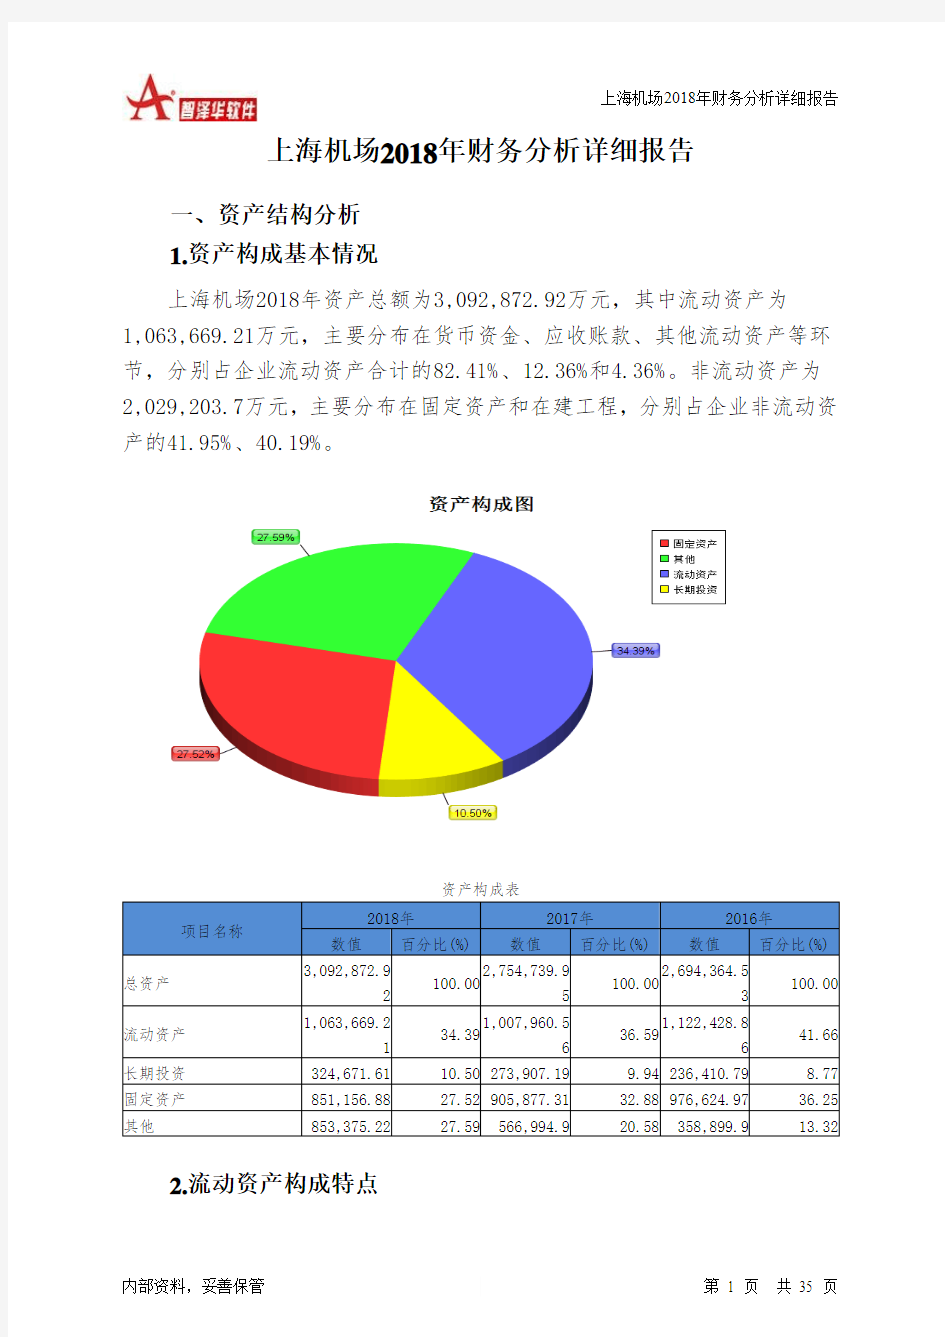 上海机场2018年财务分析详细报告-智泽华